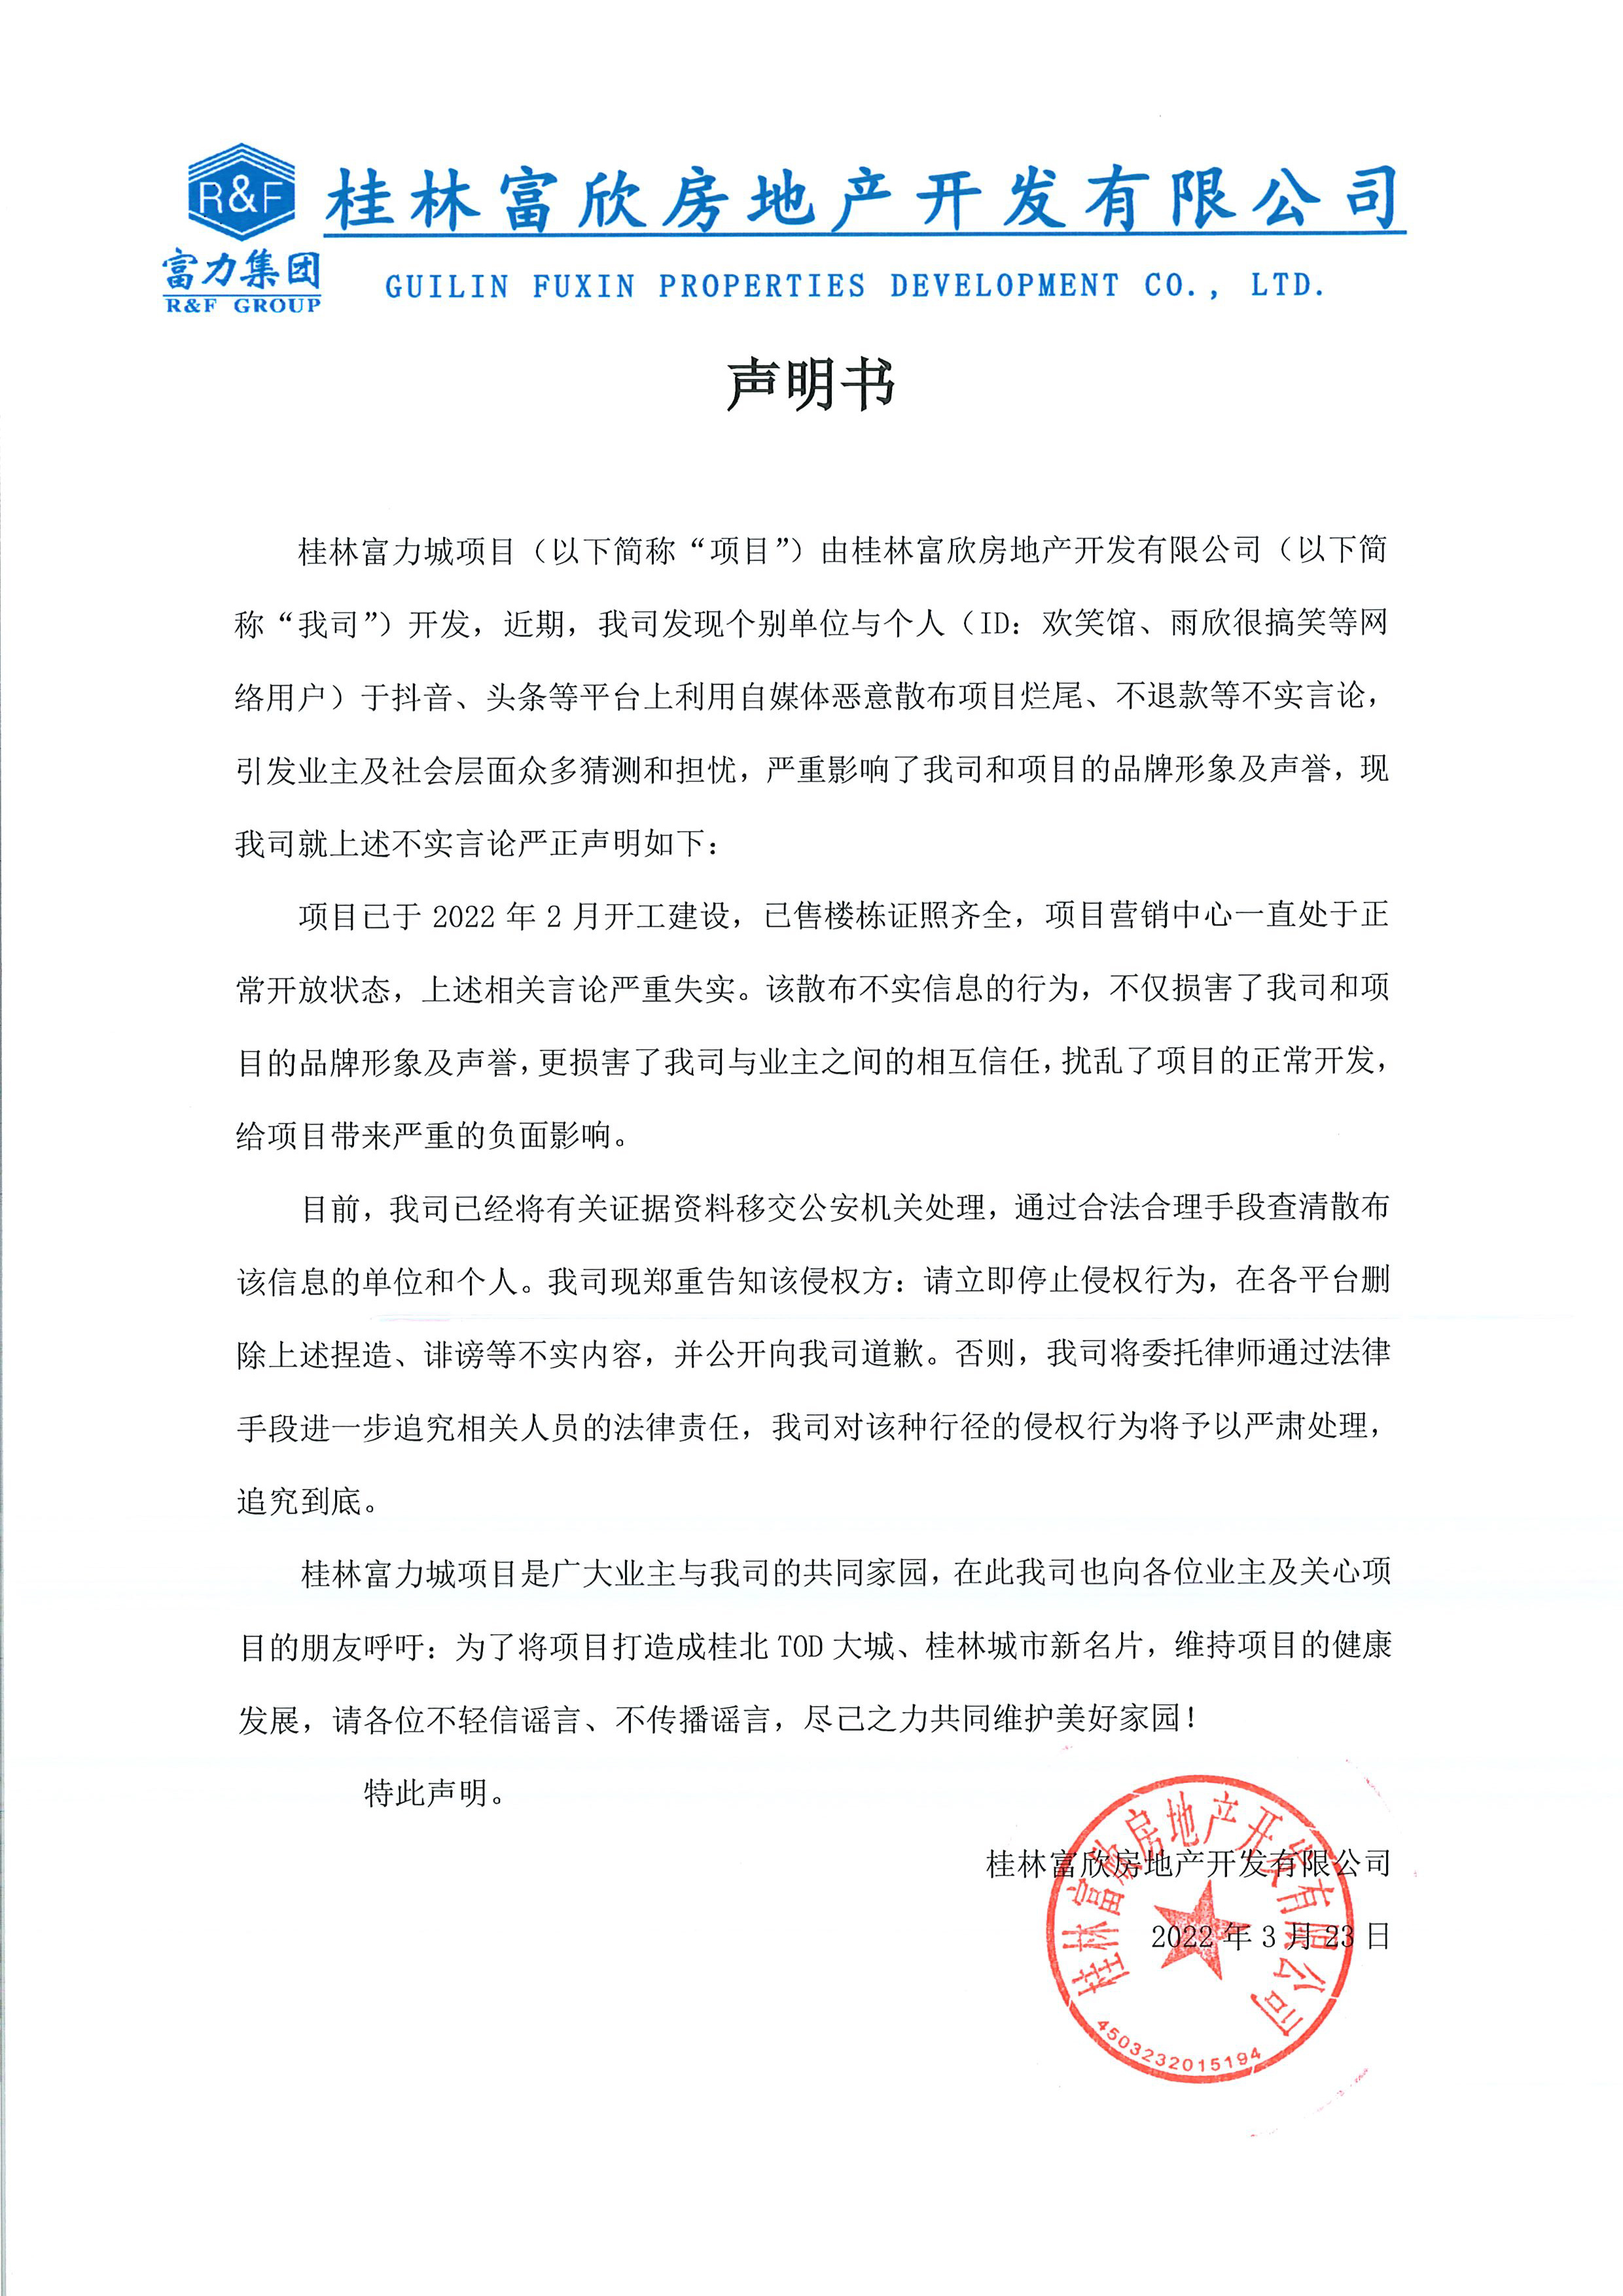 桂林富力城就自媒体恶意散布不实言论发布郑重声明